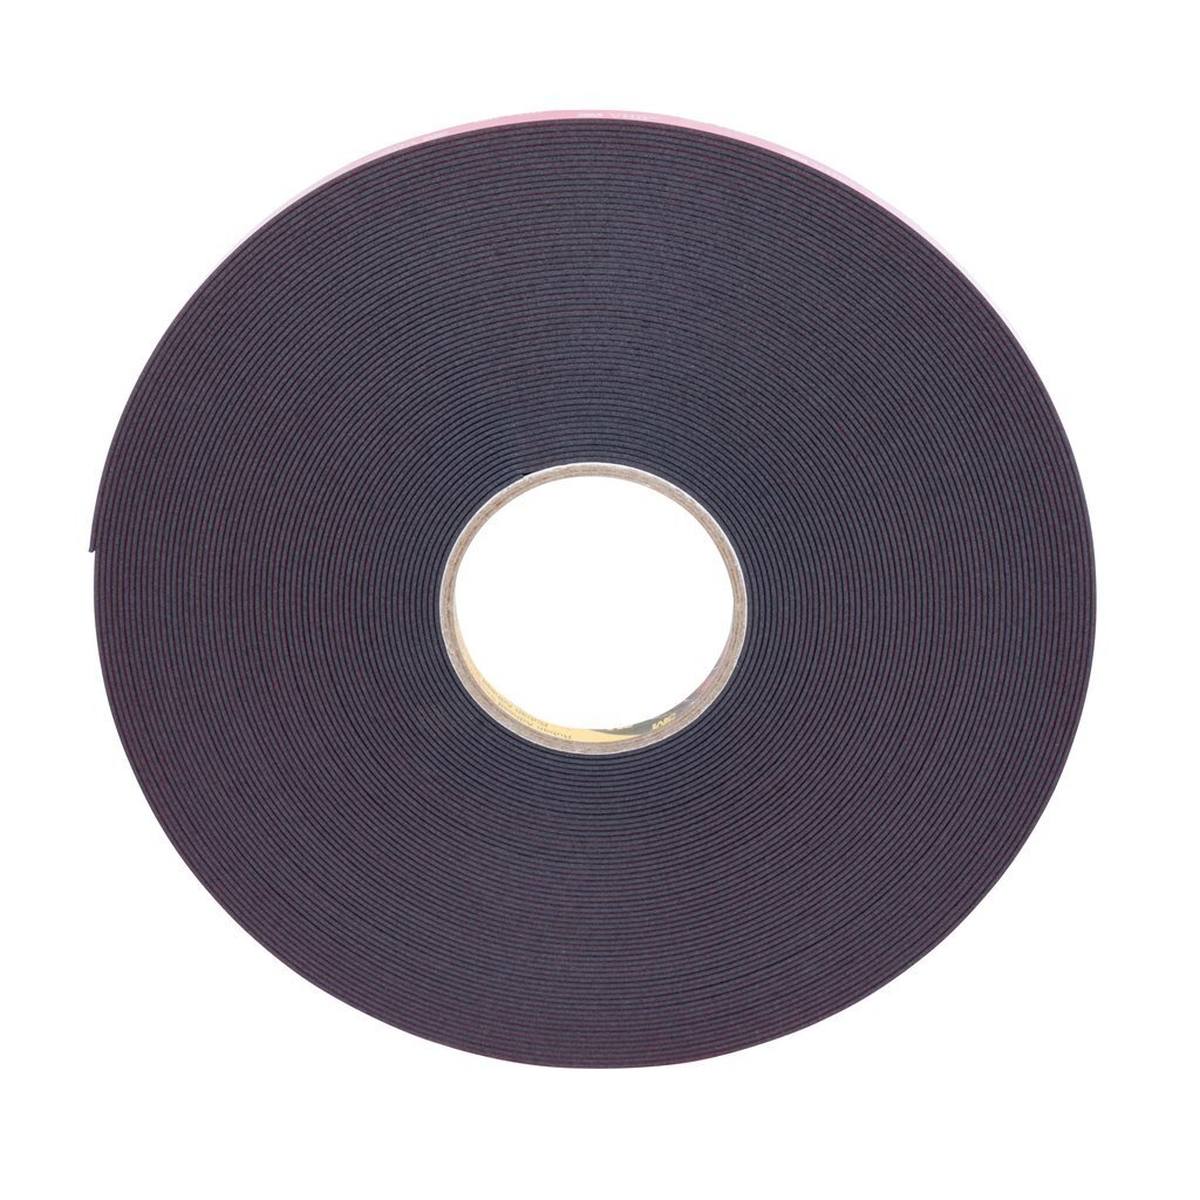 3M VHB adhesive tape 5962F, black, 9 mm x 33 m, 1.6 mm